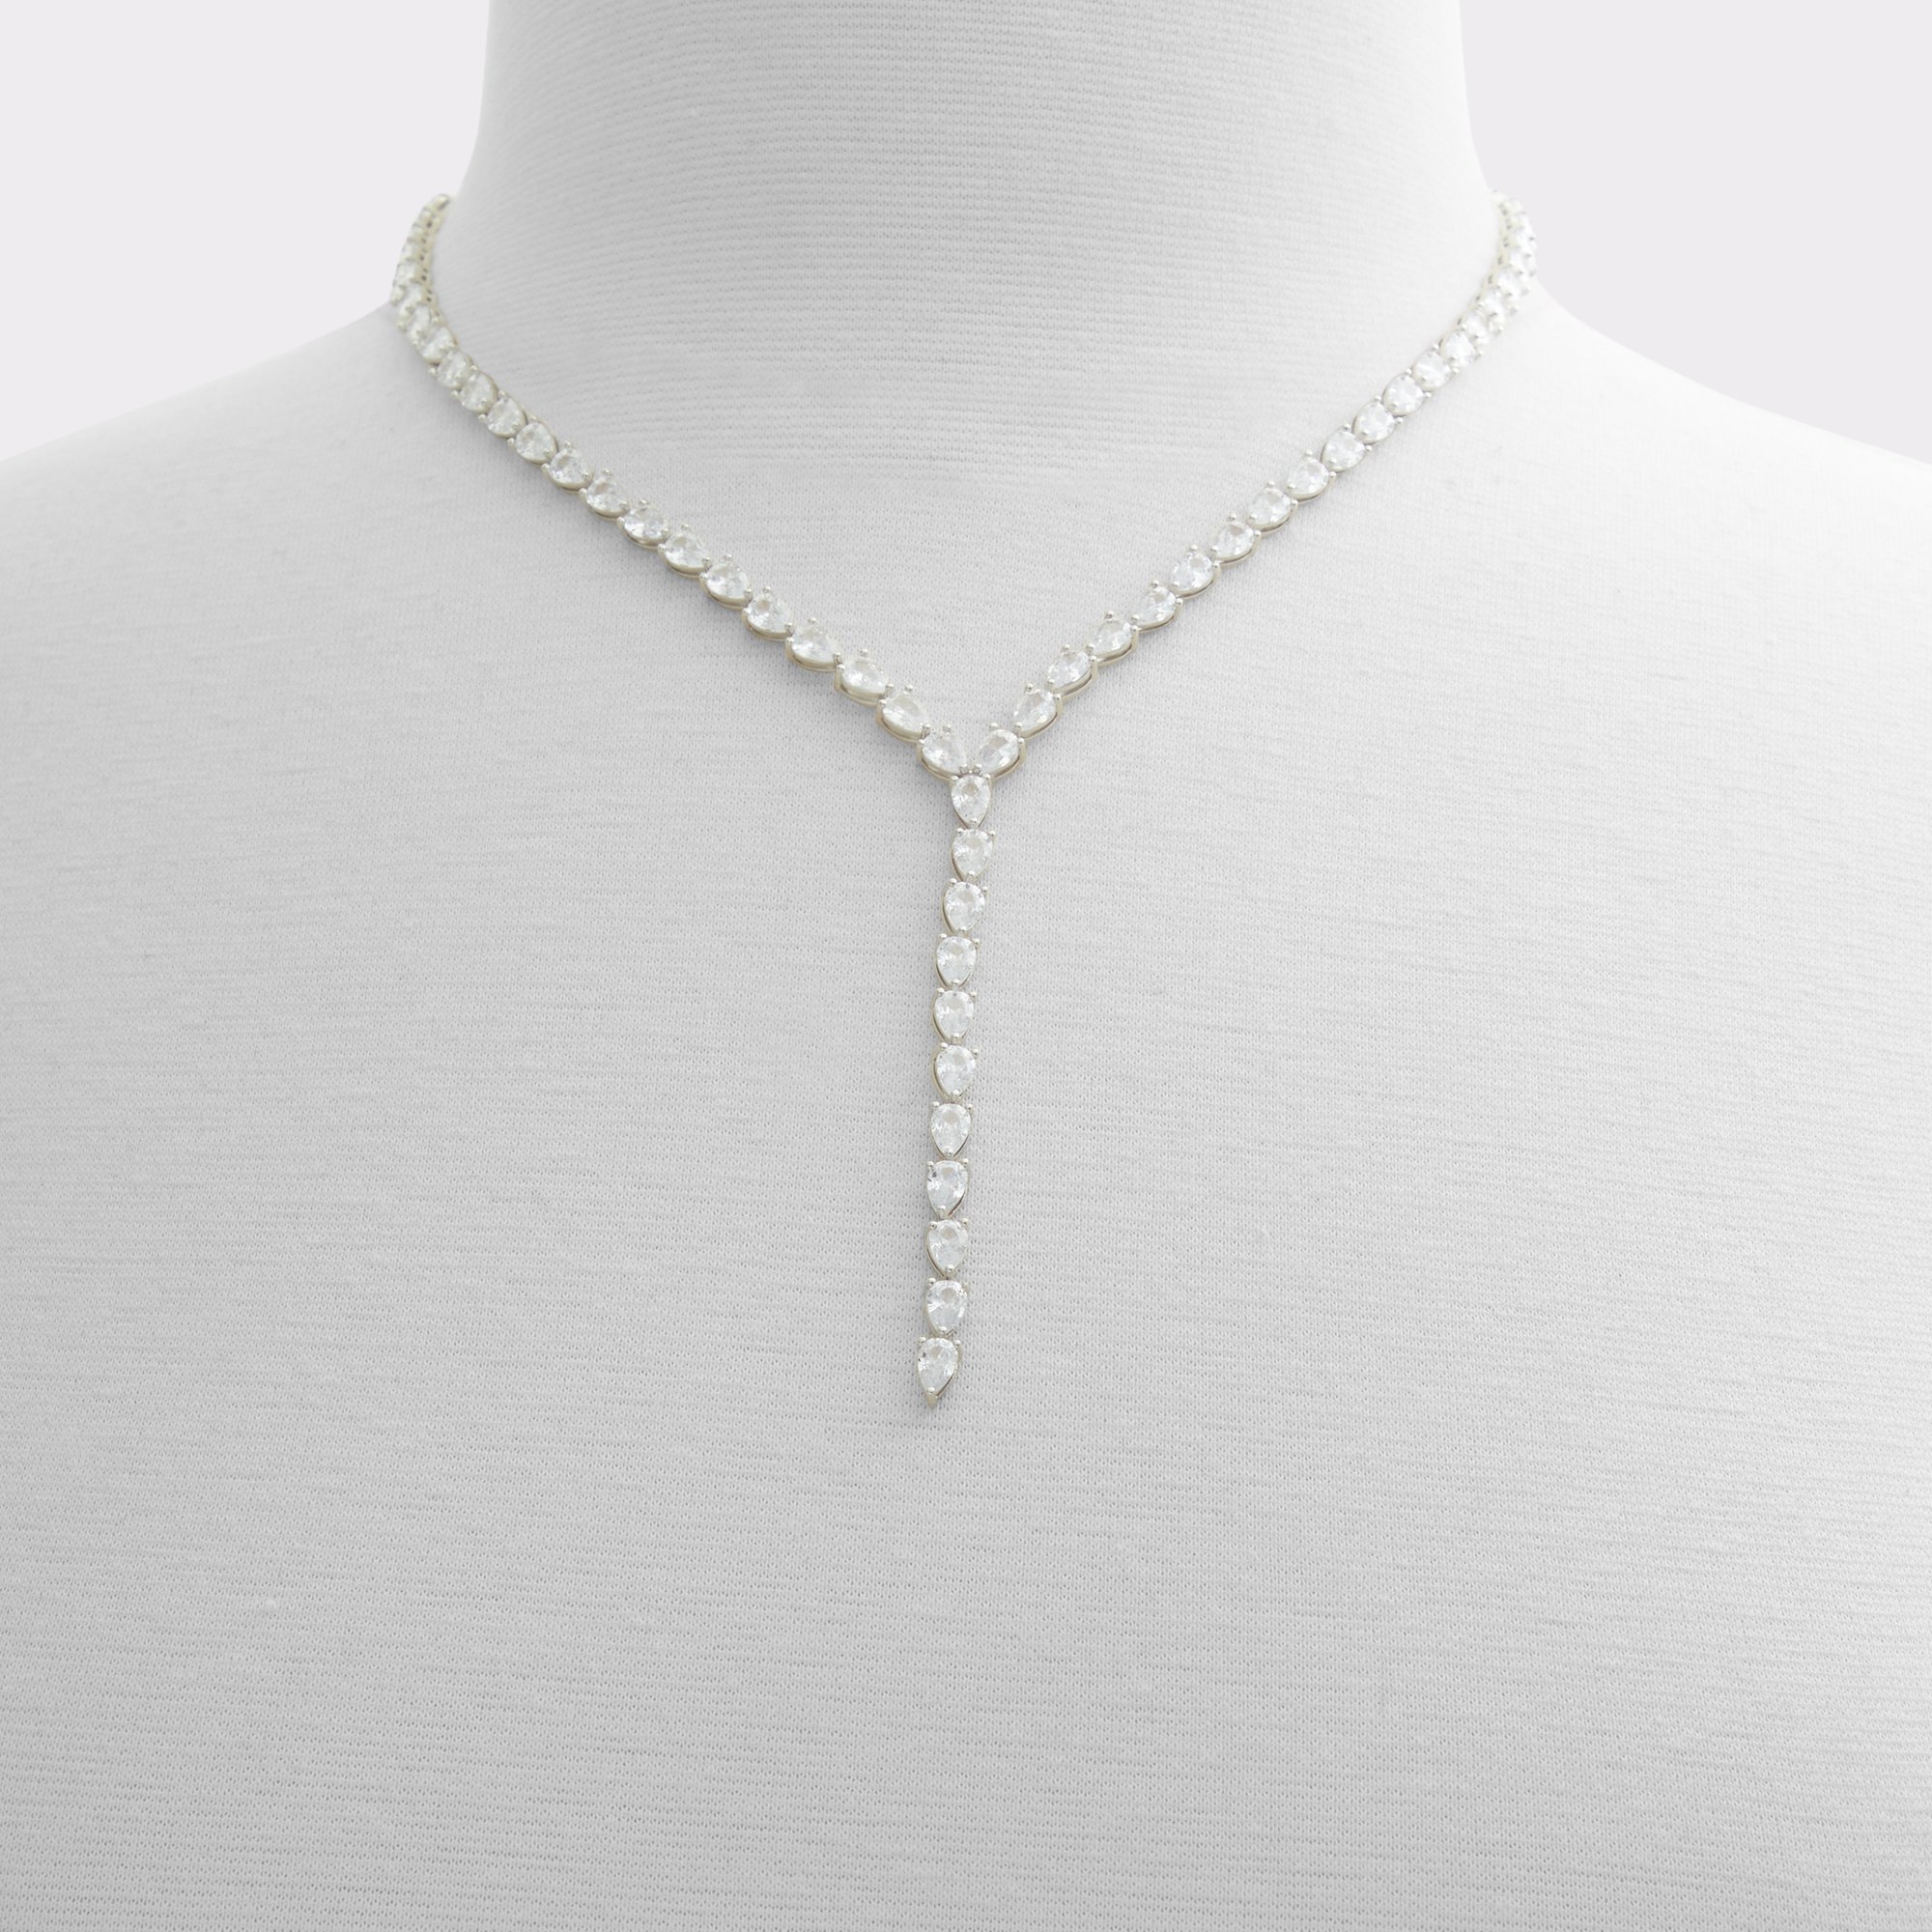 Steadi Silver/Clear Multi Women's Necklaces | ALDO Canada